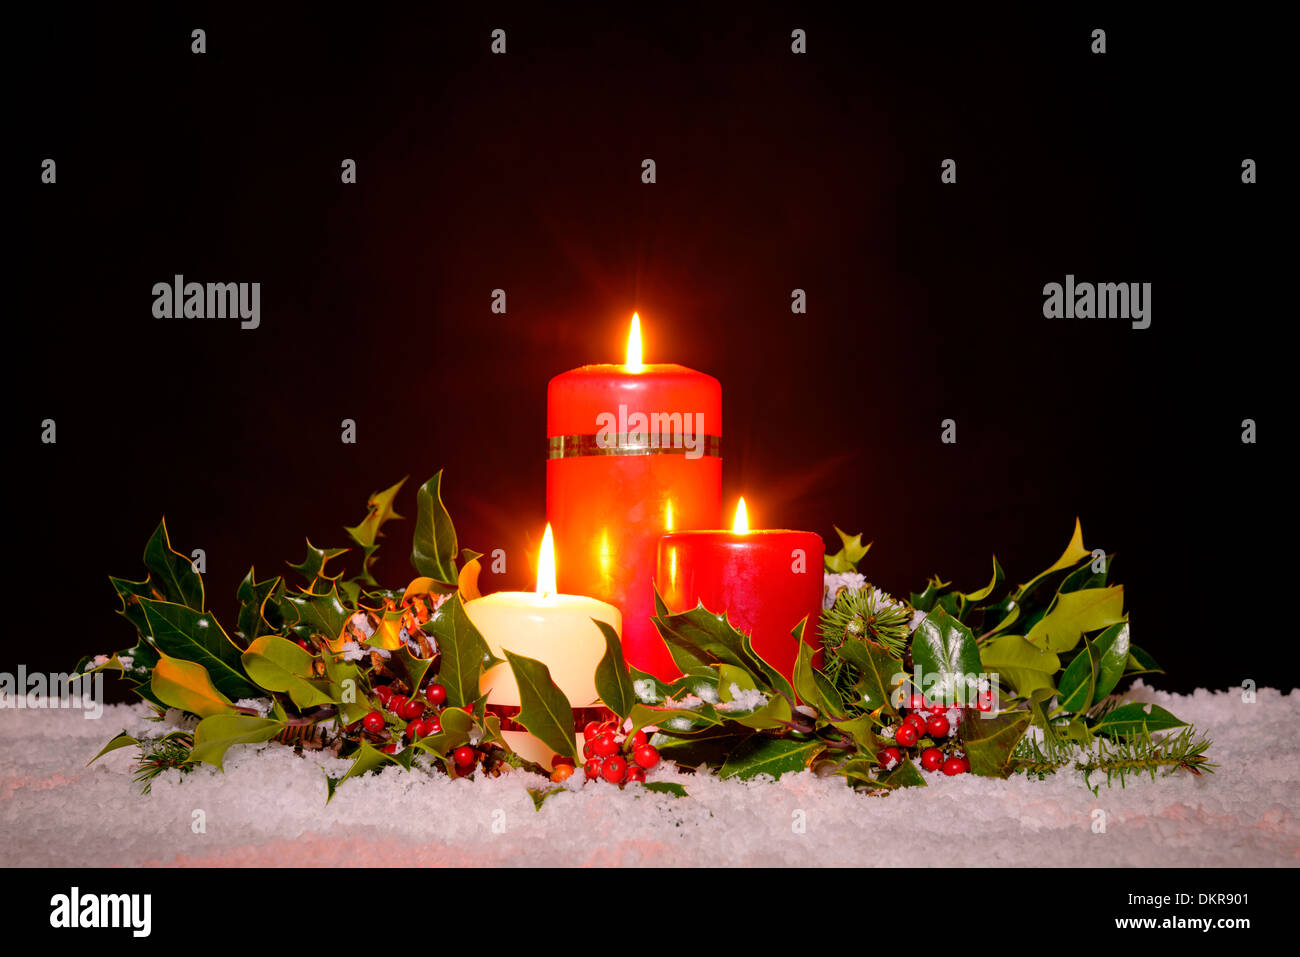 Weihnachten Stillleben mit drei Kerzen auf Schnee umgeben von einer frischen grünen Holly, Efeu und Fichte Kranz Stockfoto